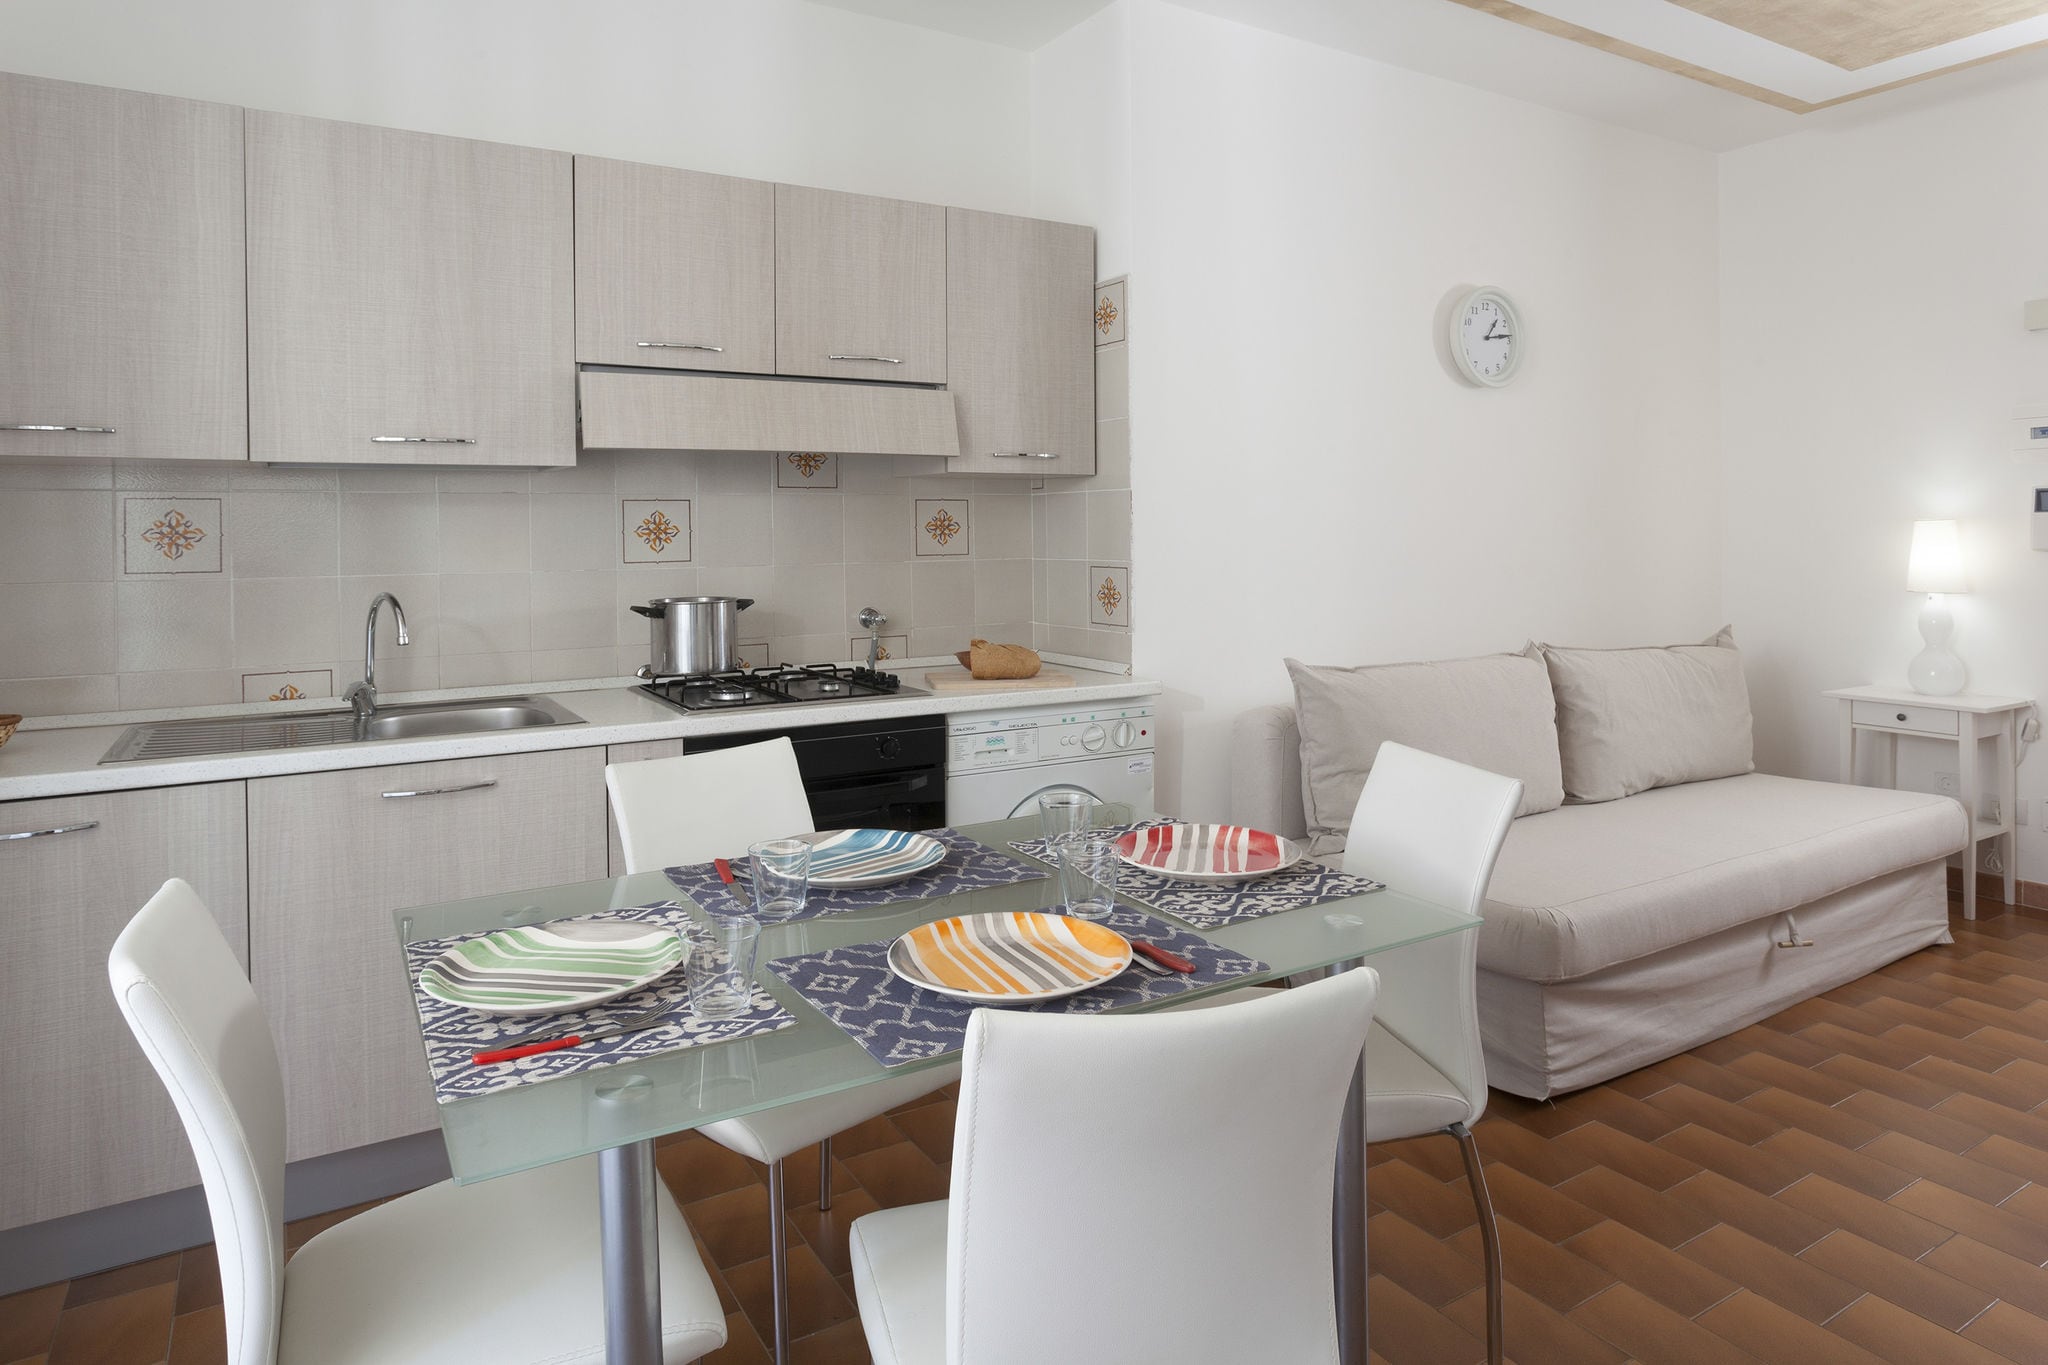 Gerenoveerd appartement in noordelijke zone van Riccione, op 100 mt. van zee.